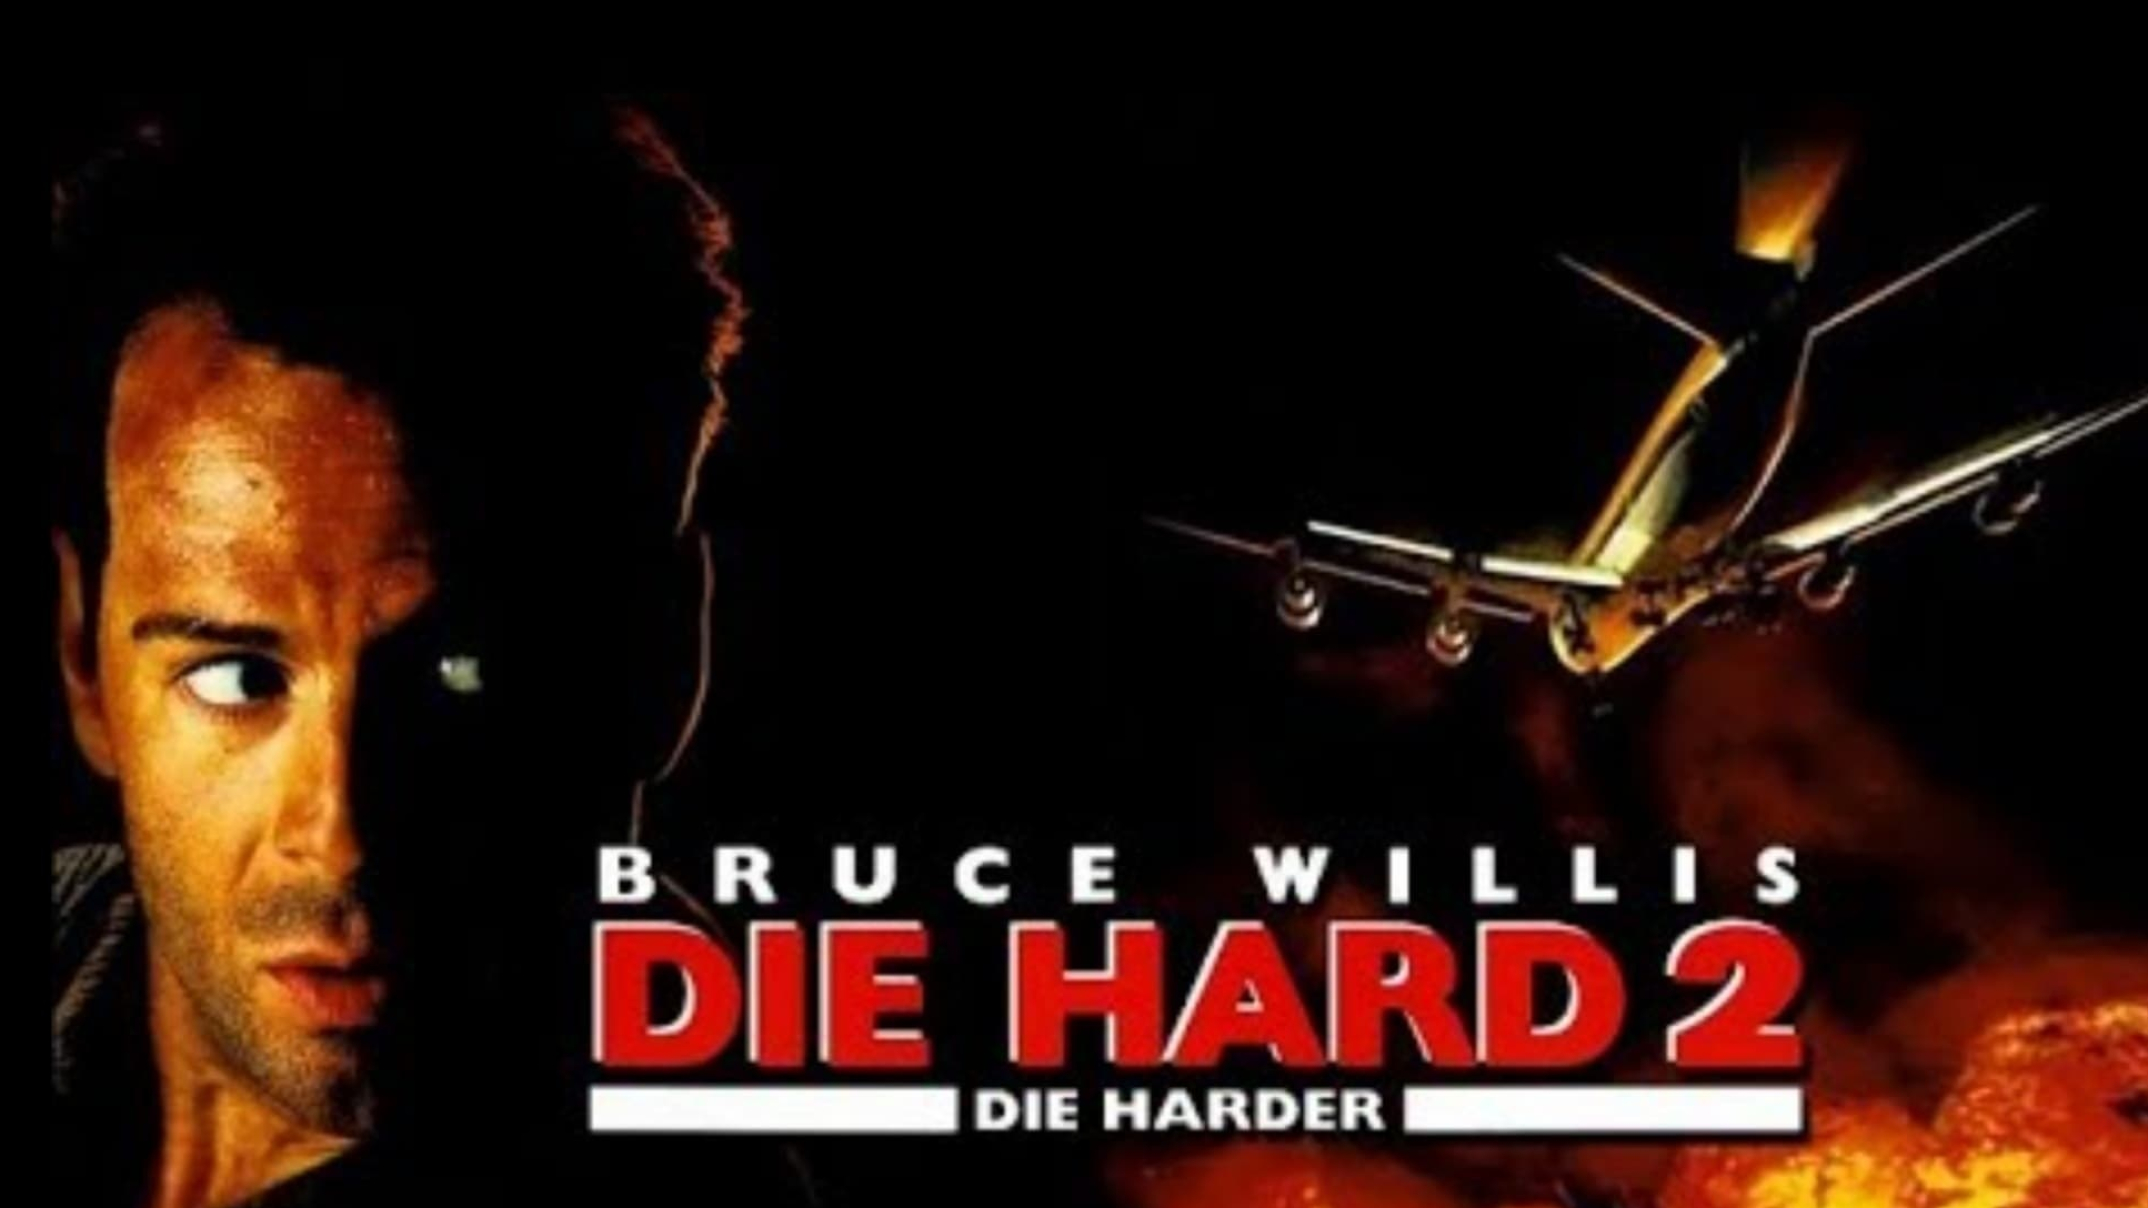 Die Hard 2, Bruce Willis, Action thriller, 2150x1210 HD Desktop